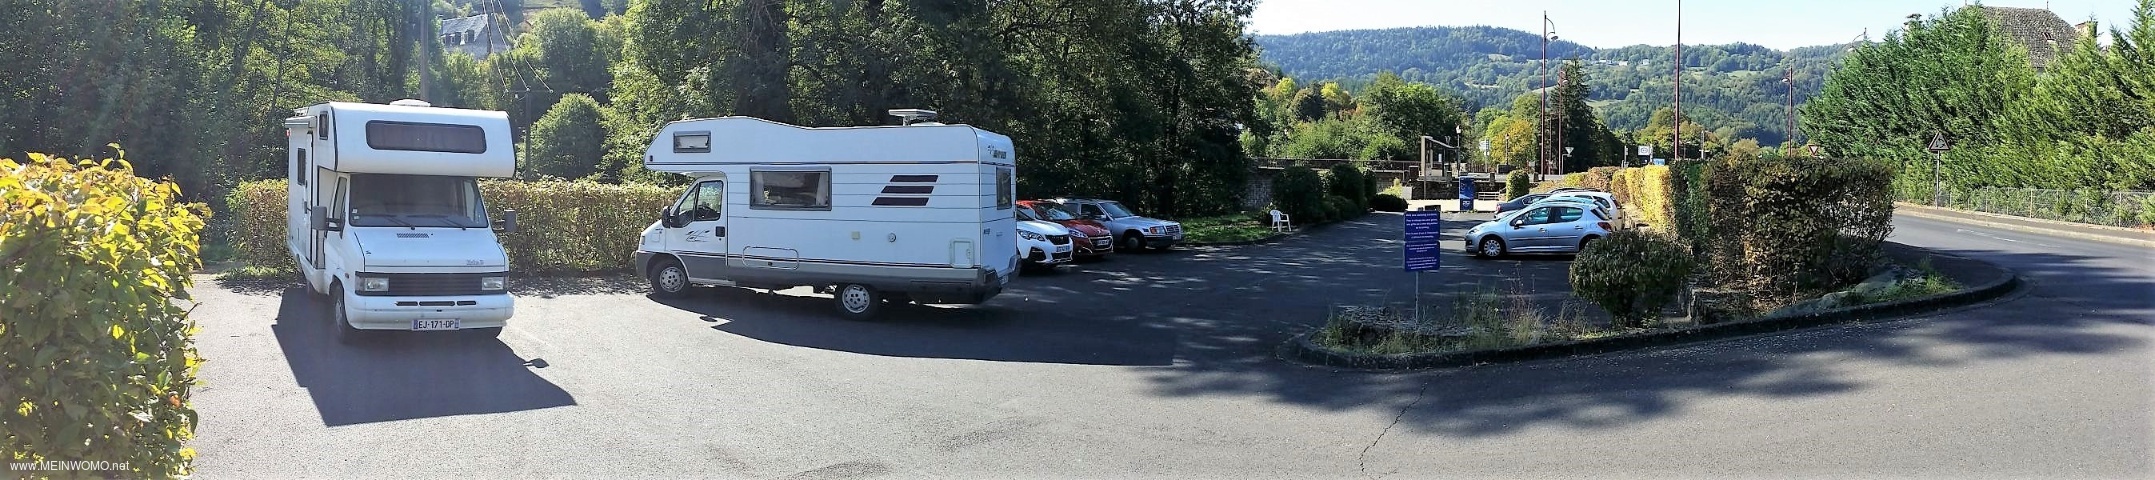  Volledige parkeerplaats, op de achtergrond het V / E-systeem (09/2018).